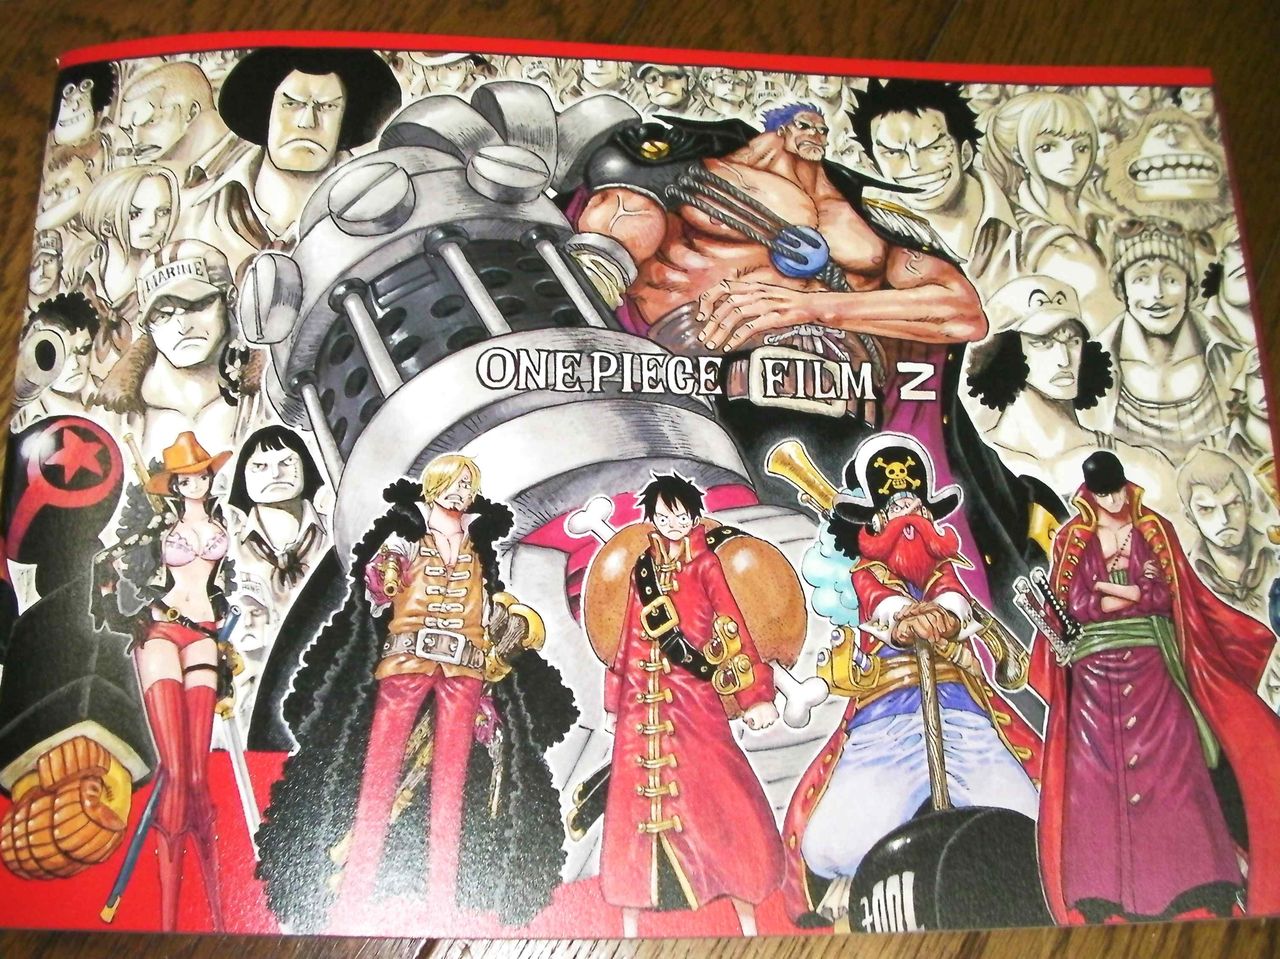 ワンピースフィルムz映画 One Piece Film Z 公開2日間114万人 ハウル 超えで今世紀最高の出足に ネタバレ クマジー王国のくまじろう